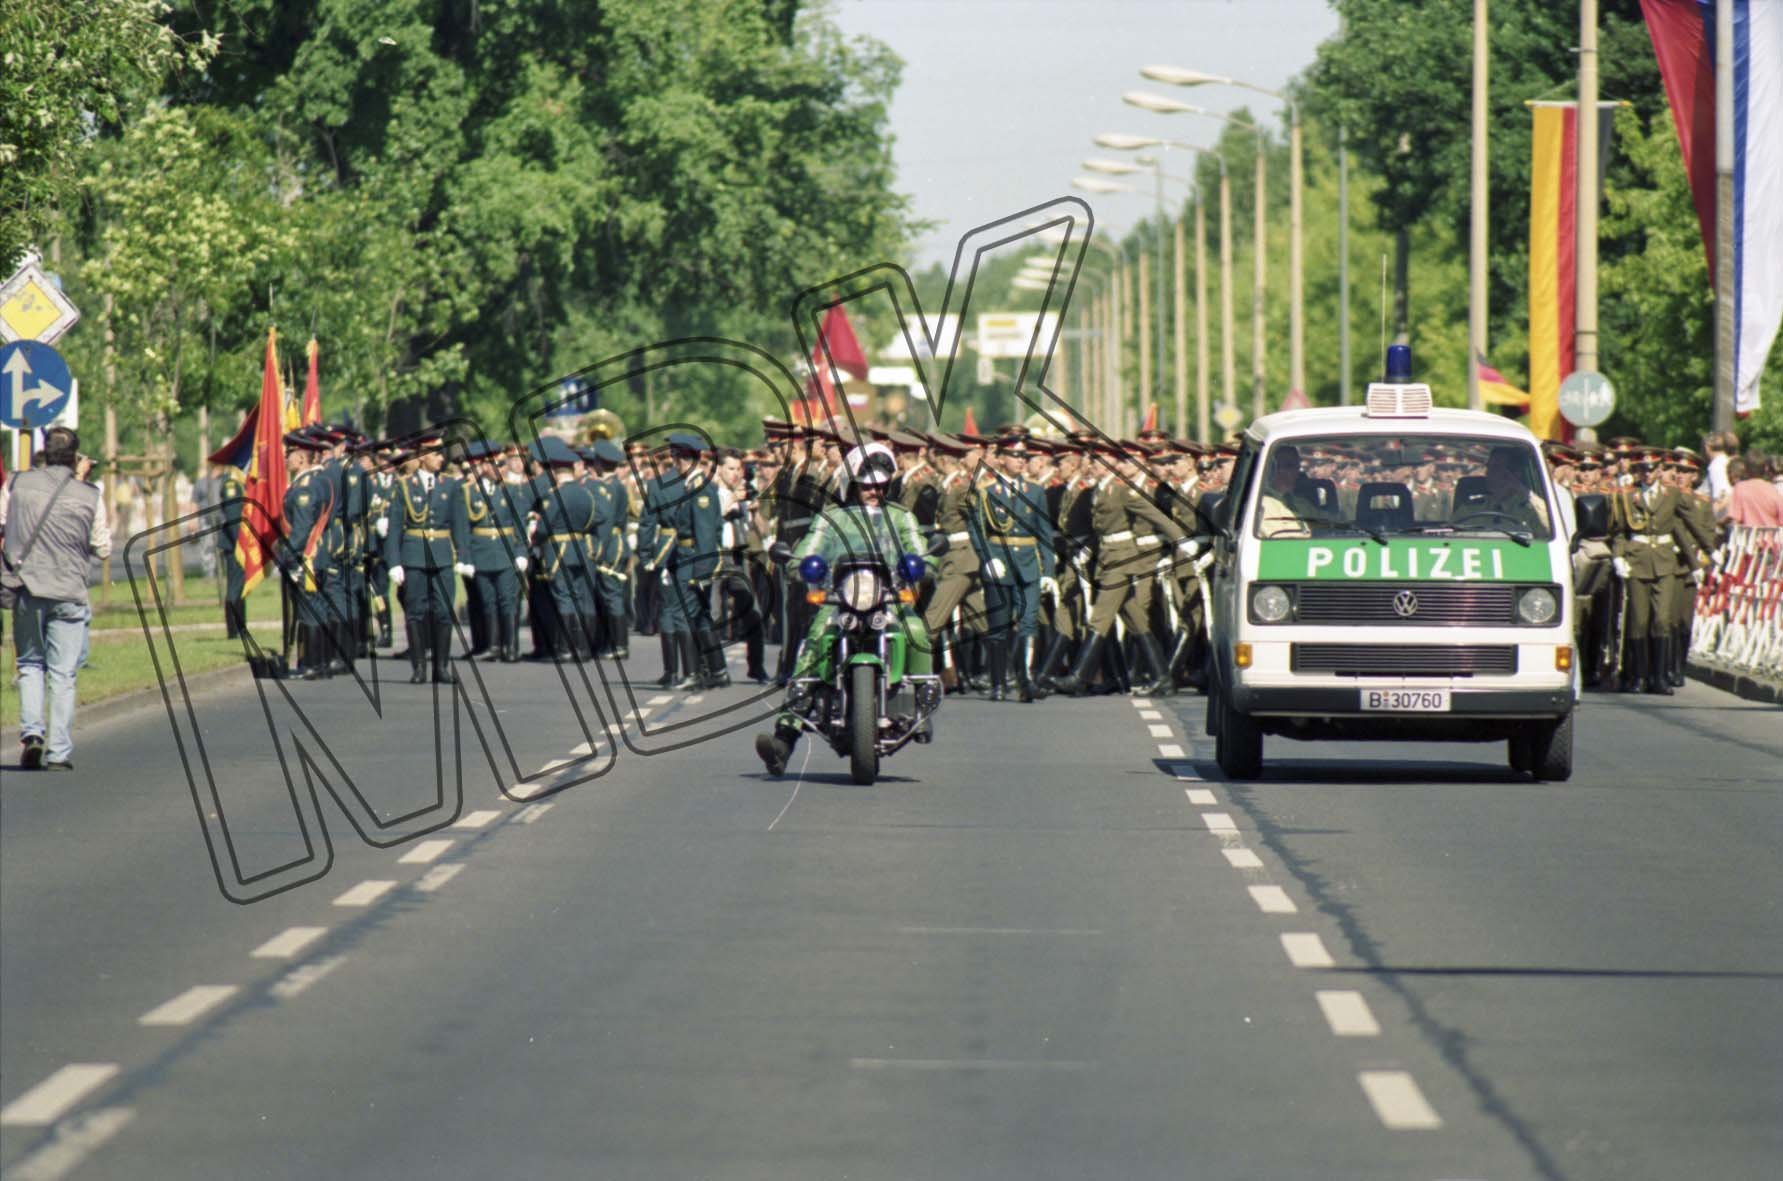 Fotografie: Verabschiedung der Berlin-Brigade in der Wuhlheide, Berlin, 25. Juni 1994 (Museum Berlin-Karlshorst RR-P)